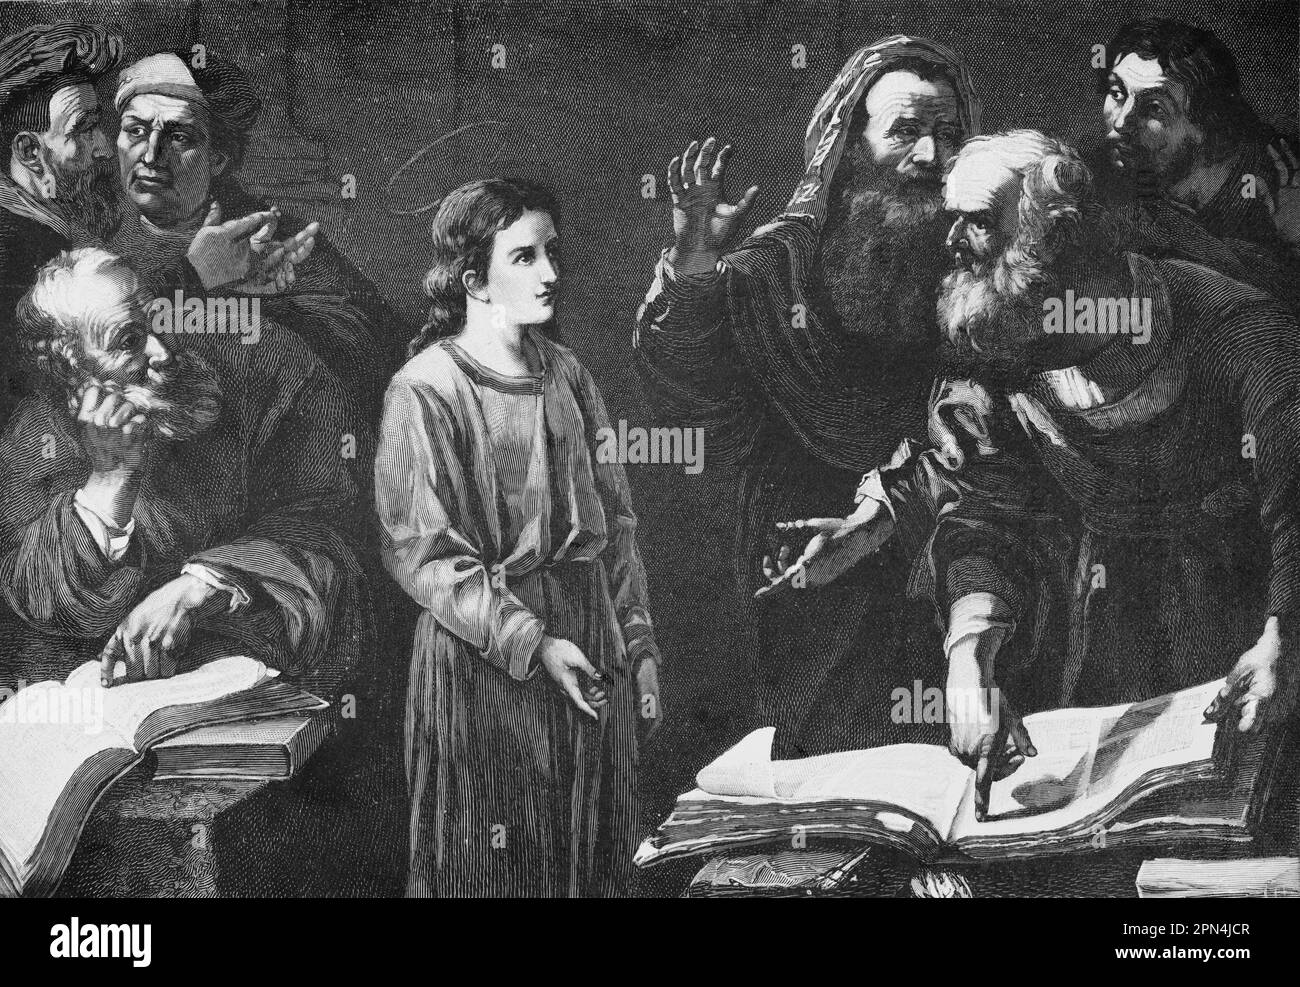 Jésus de 12 ans dans le Temple, Luc, chapitre 2, versets 41-32, bible, Nouveau Testament, illustration historique 1890 Banque D'Images